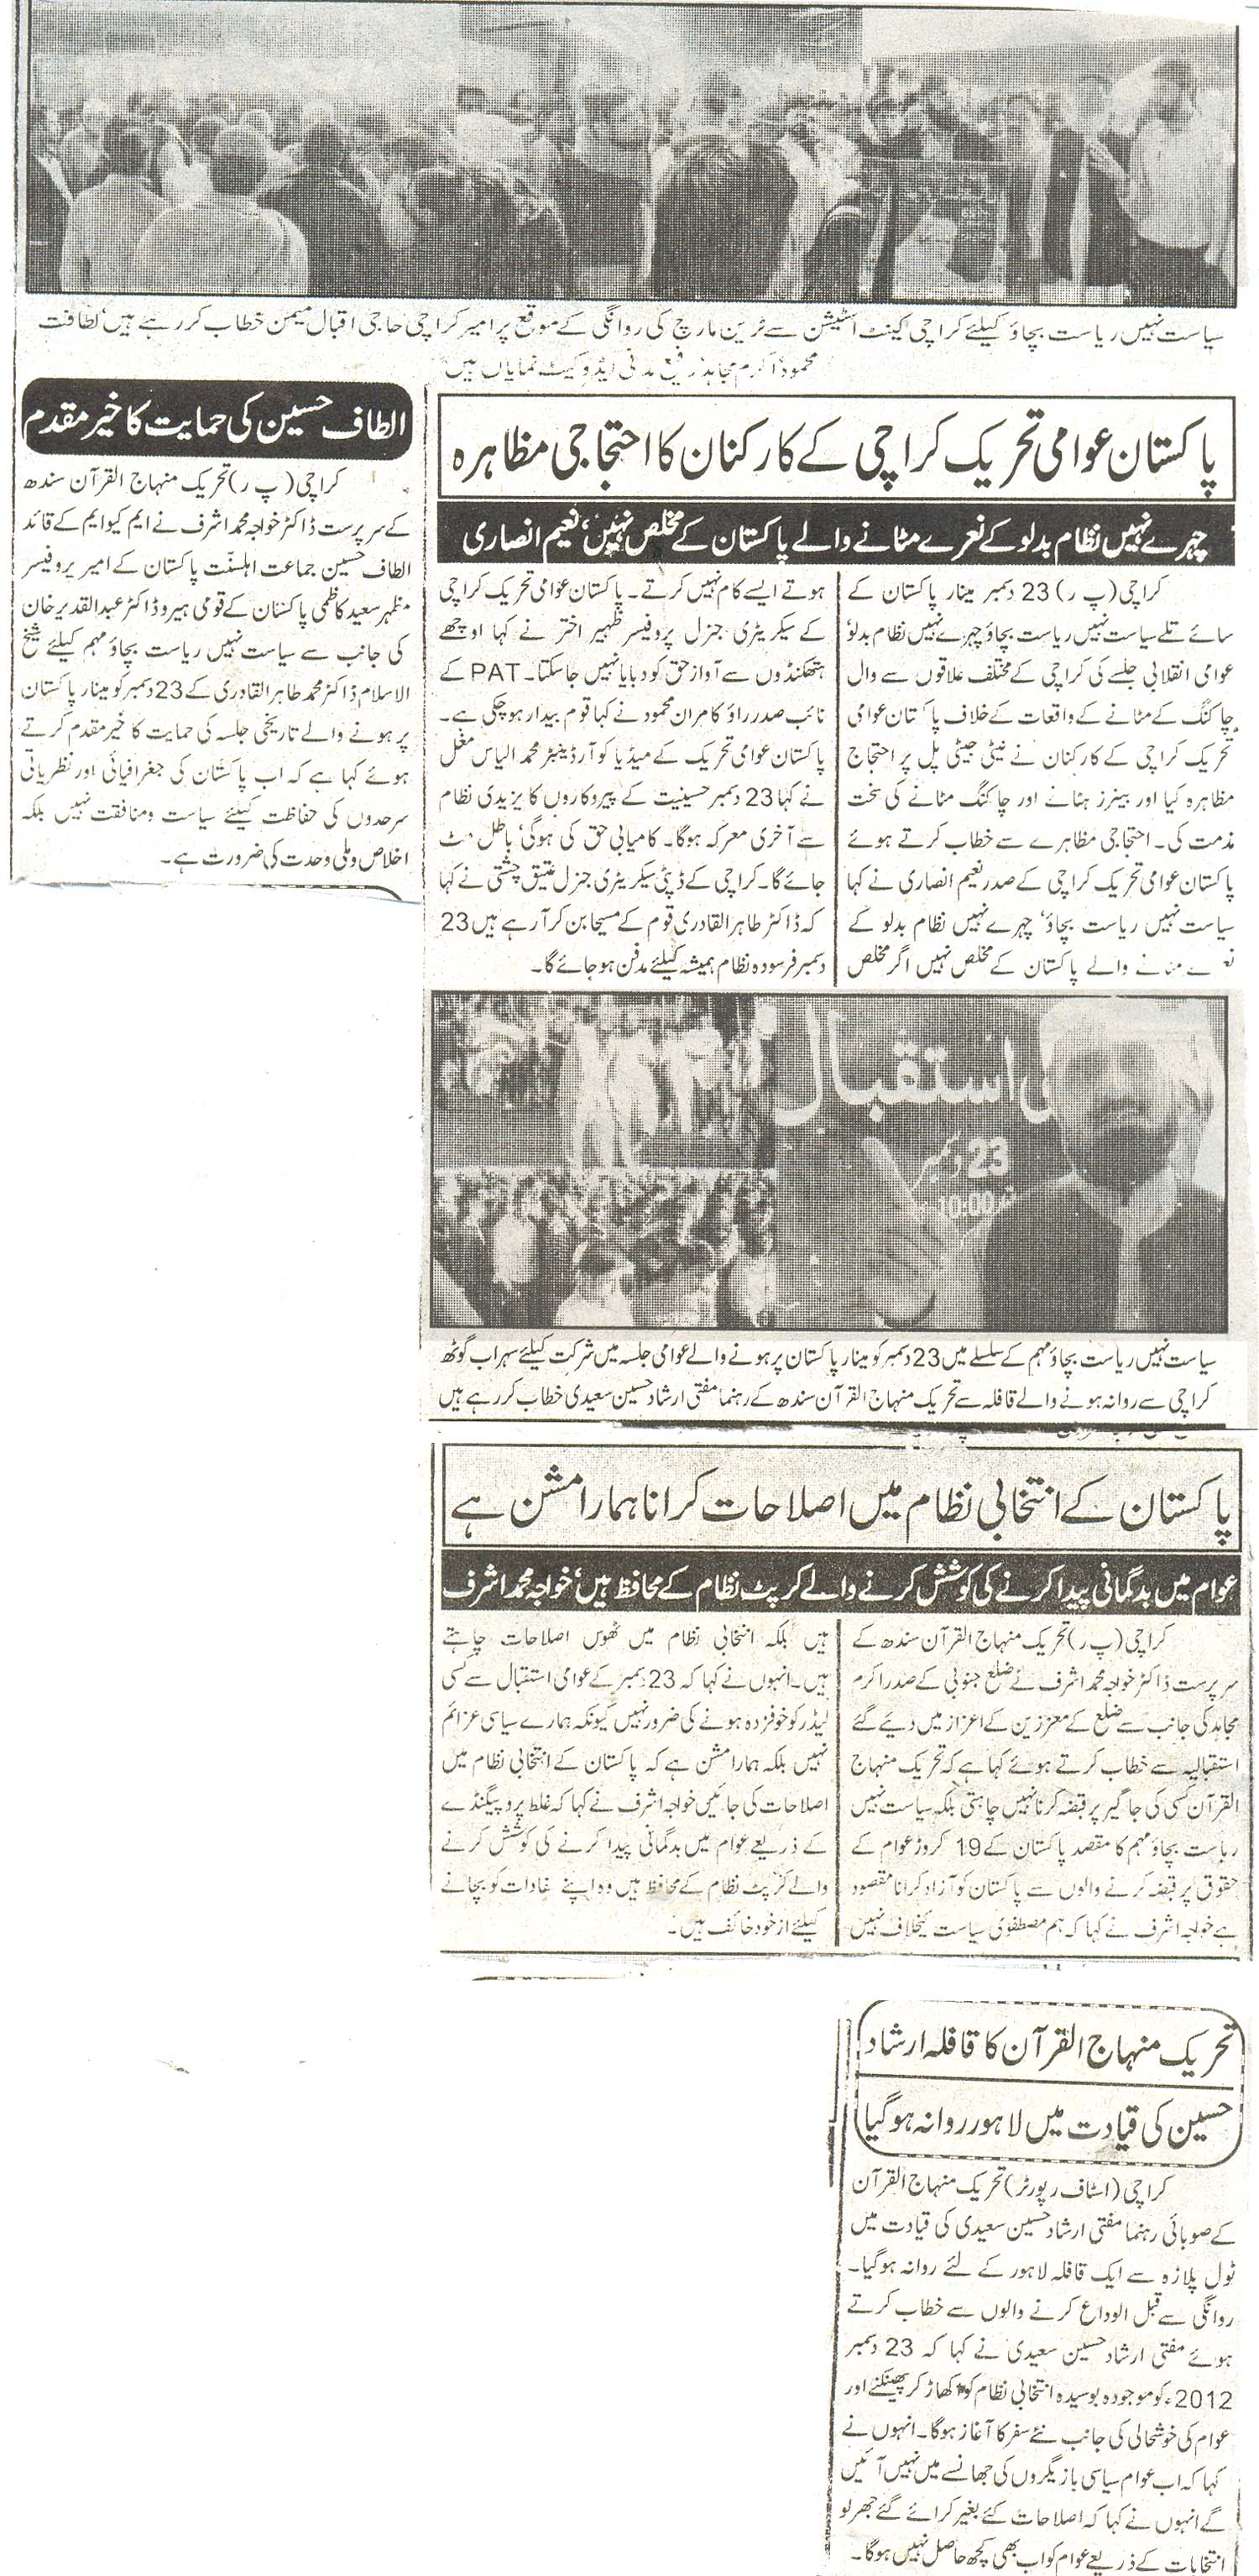 Minhaj-ul-Quran  Print Media Coveragedaily intikhab page 3